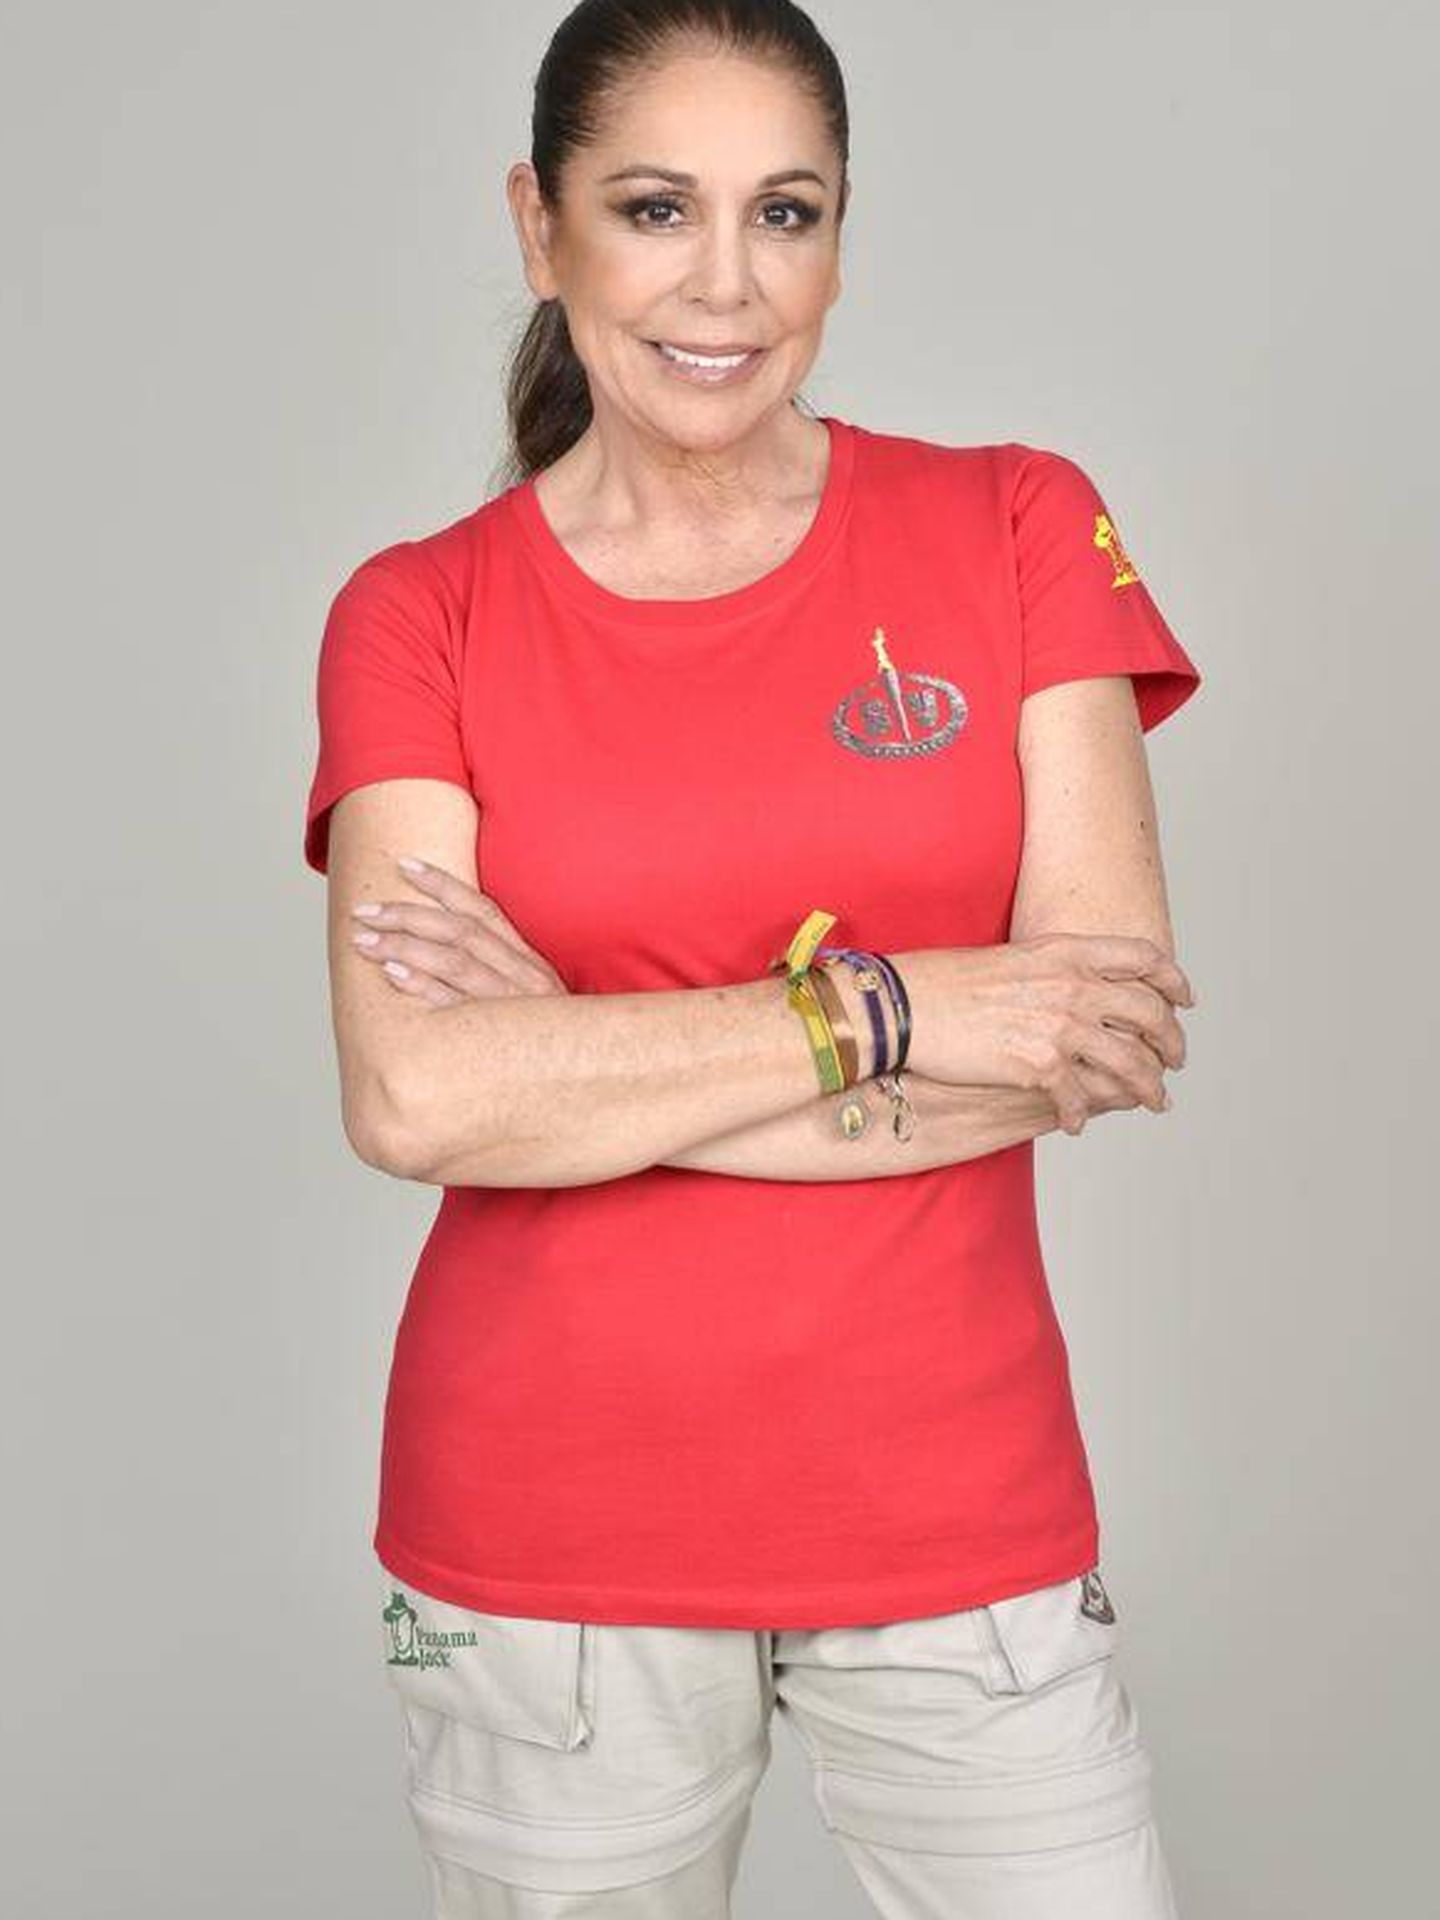 Isabel Pantoja, la estrella del programa. (Mediaset)